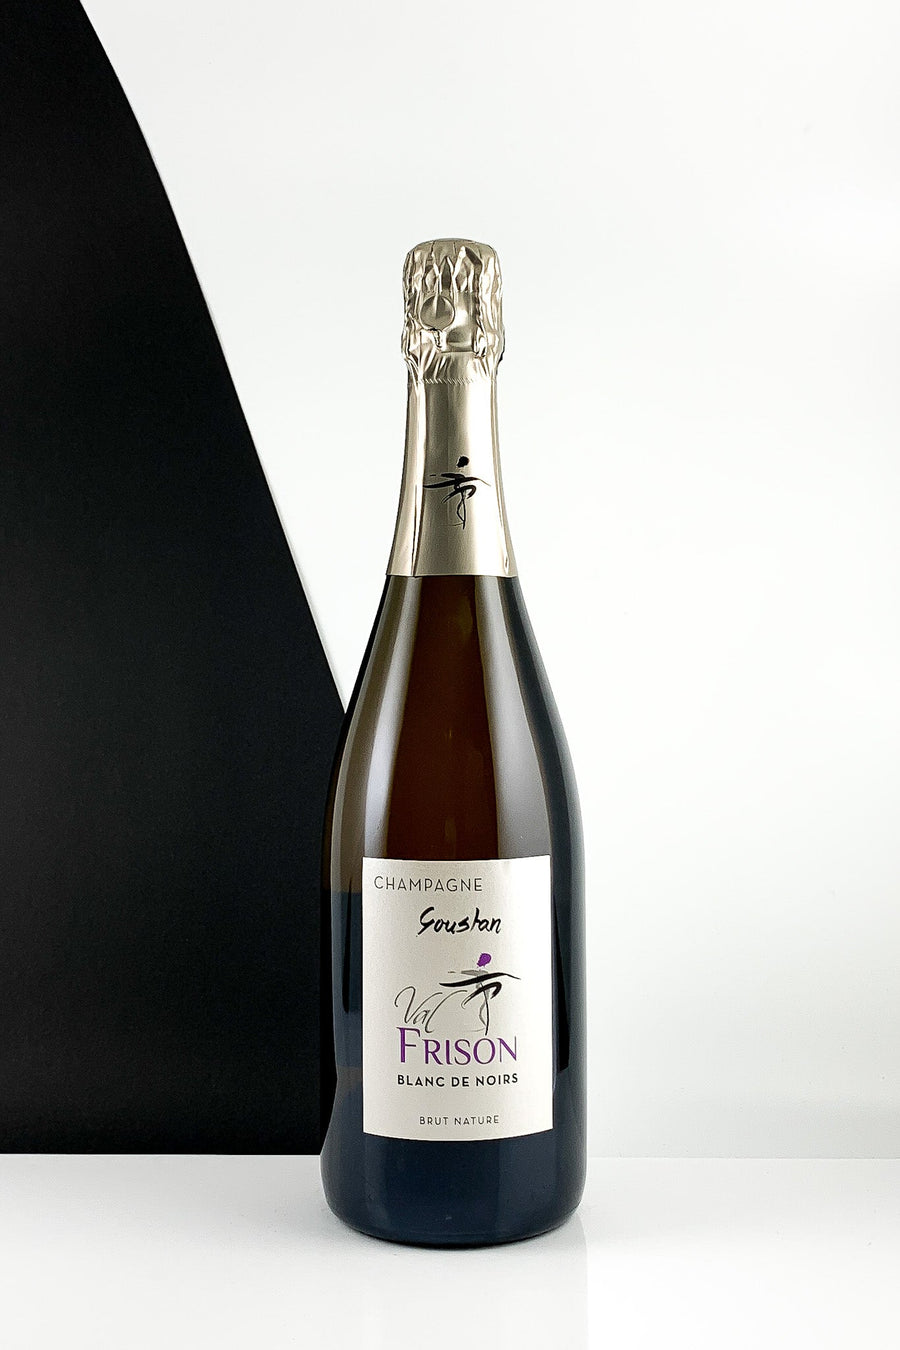 Champagne Val Frison Goustan Blanc de Noir Brut Nature MAGNUM NV